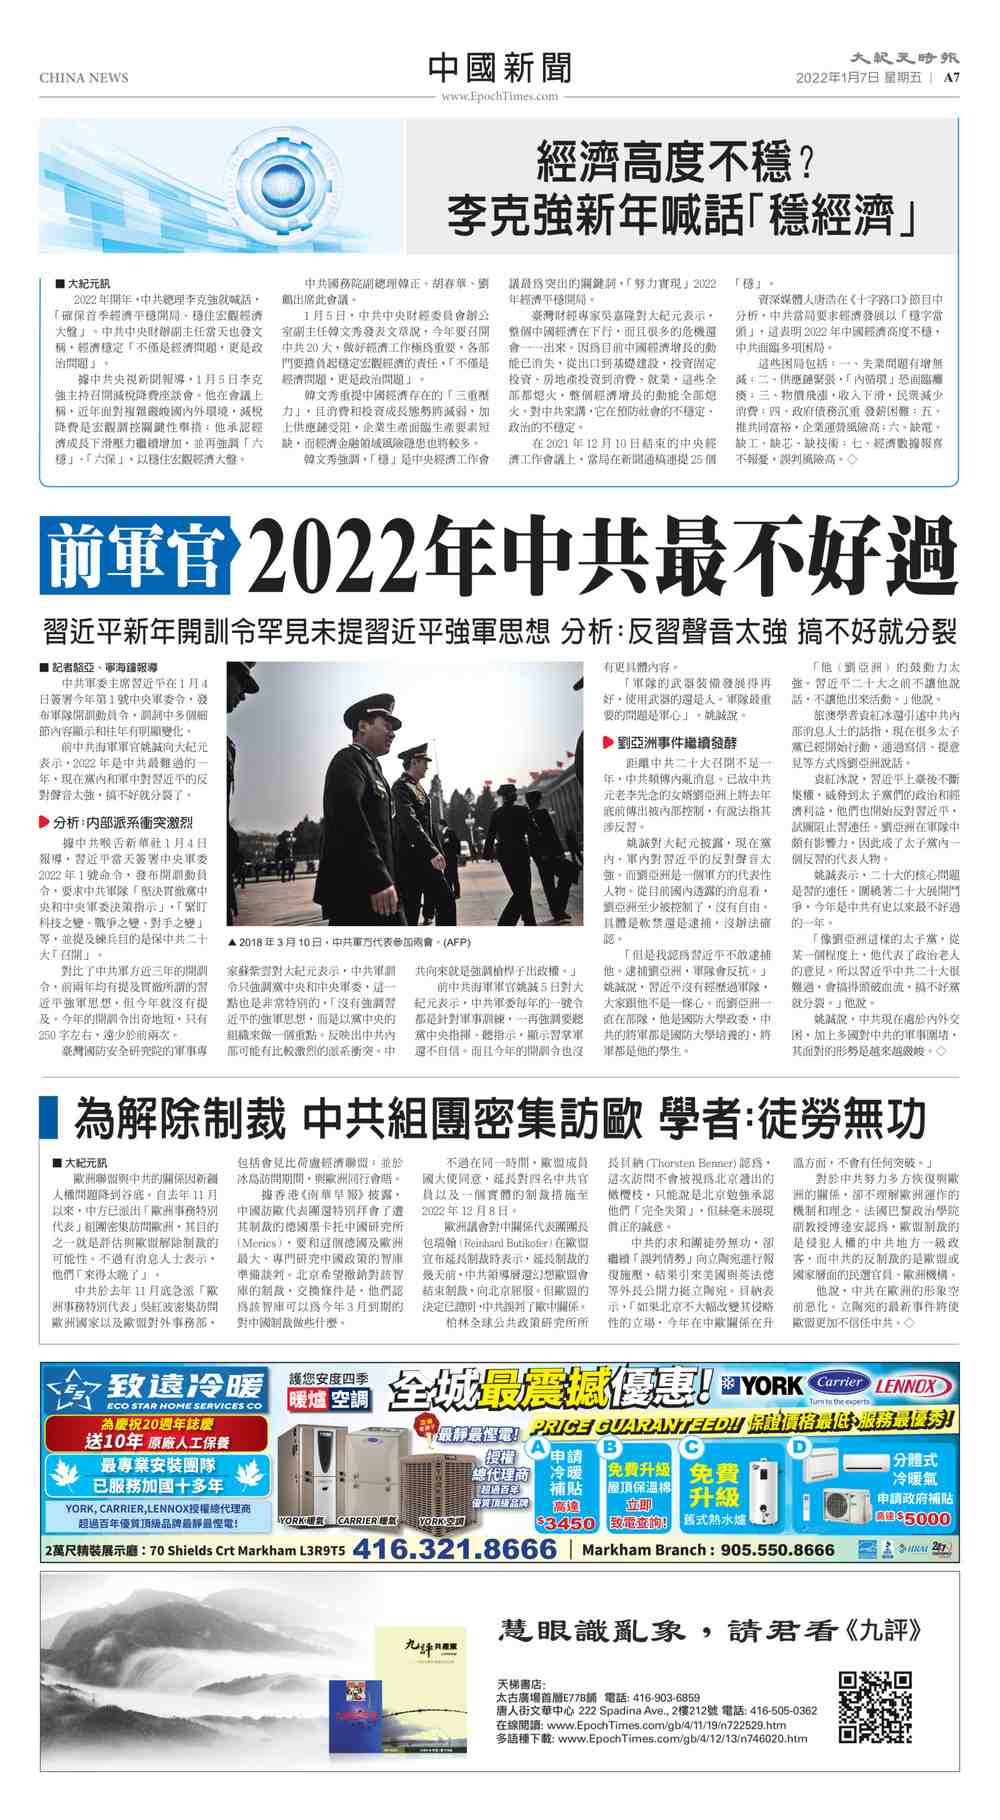 Toronto 20220107 a07 chinanews c s250x